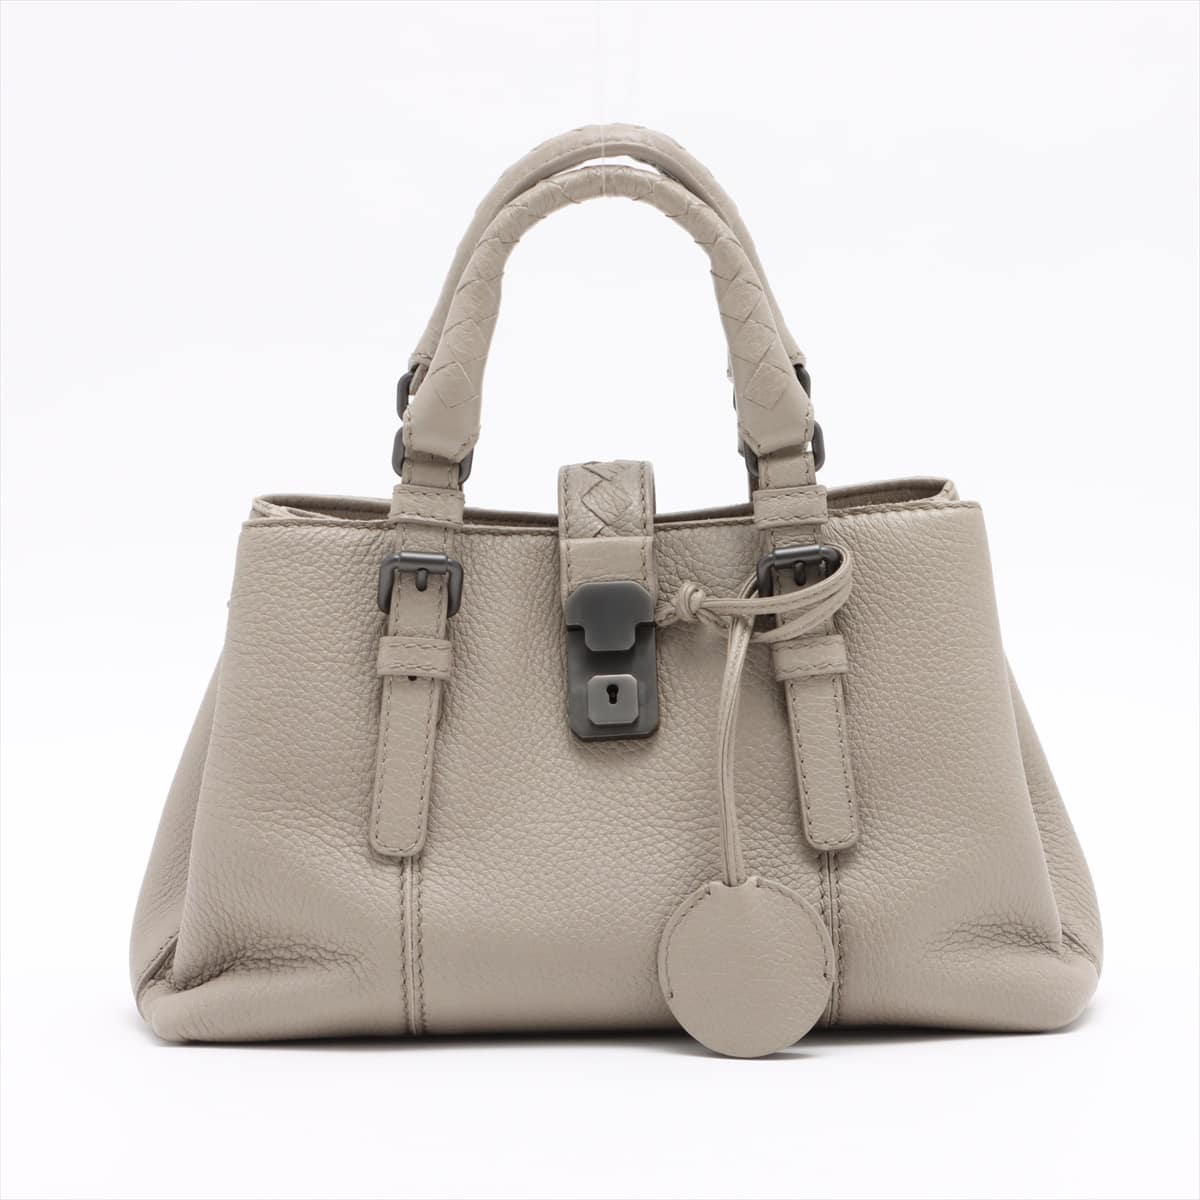 Bottega Veneta Intrecciato Roma Leather 2way handbag Grey